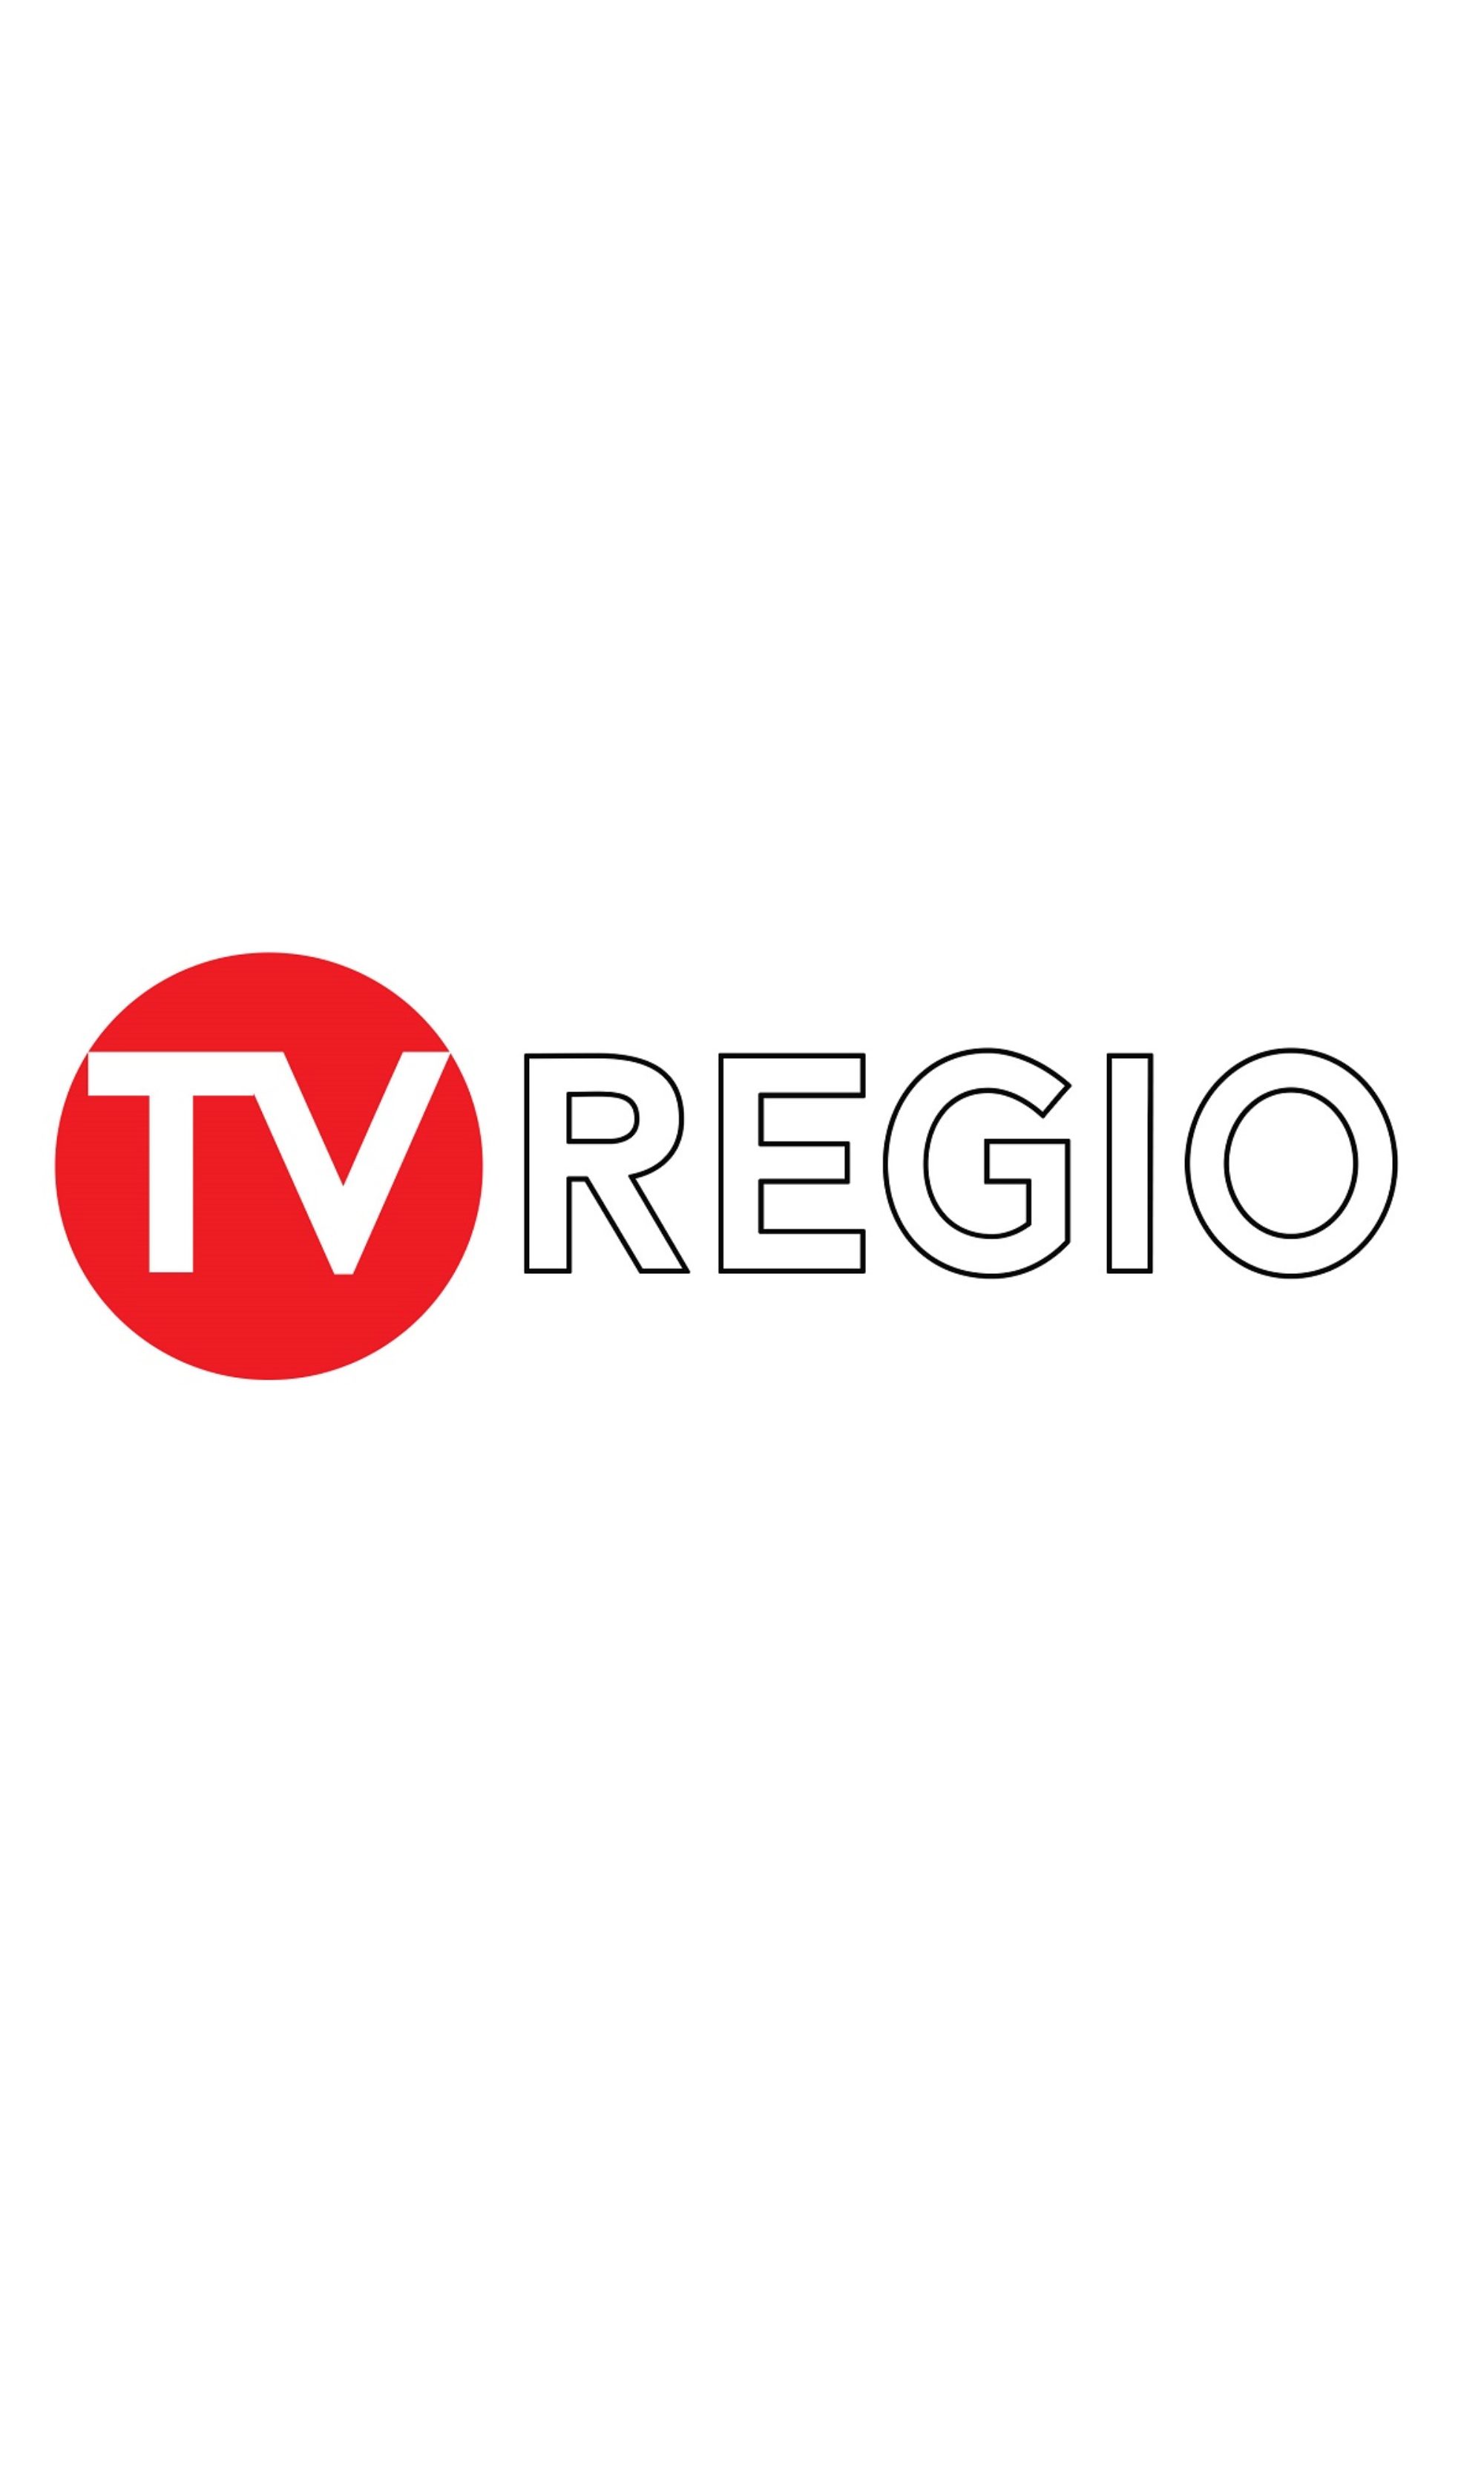 TV Regio